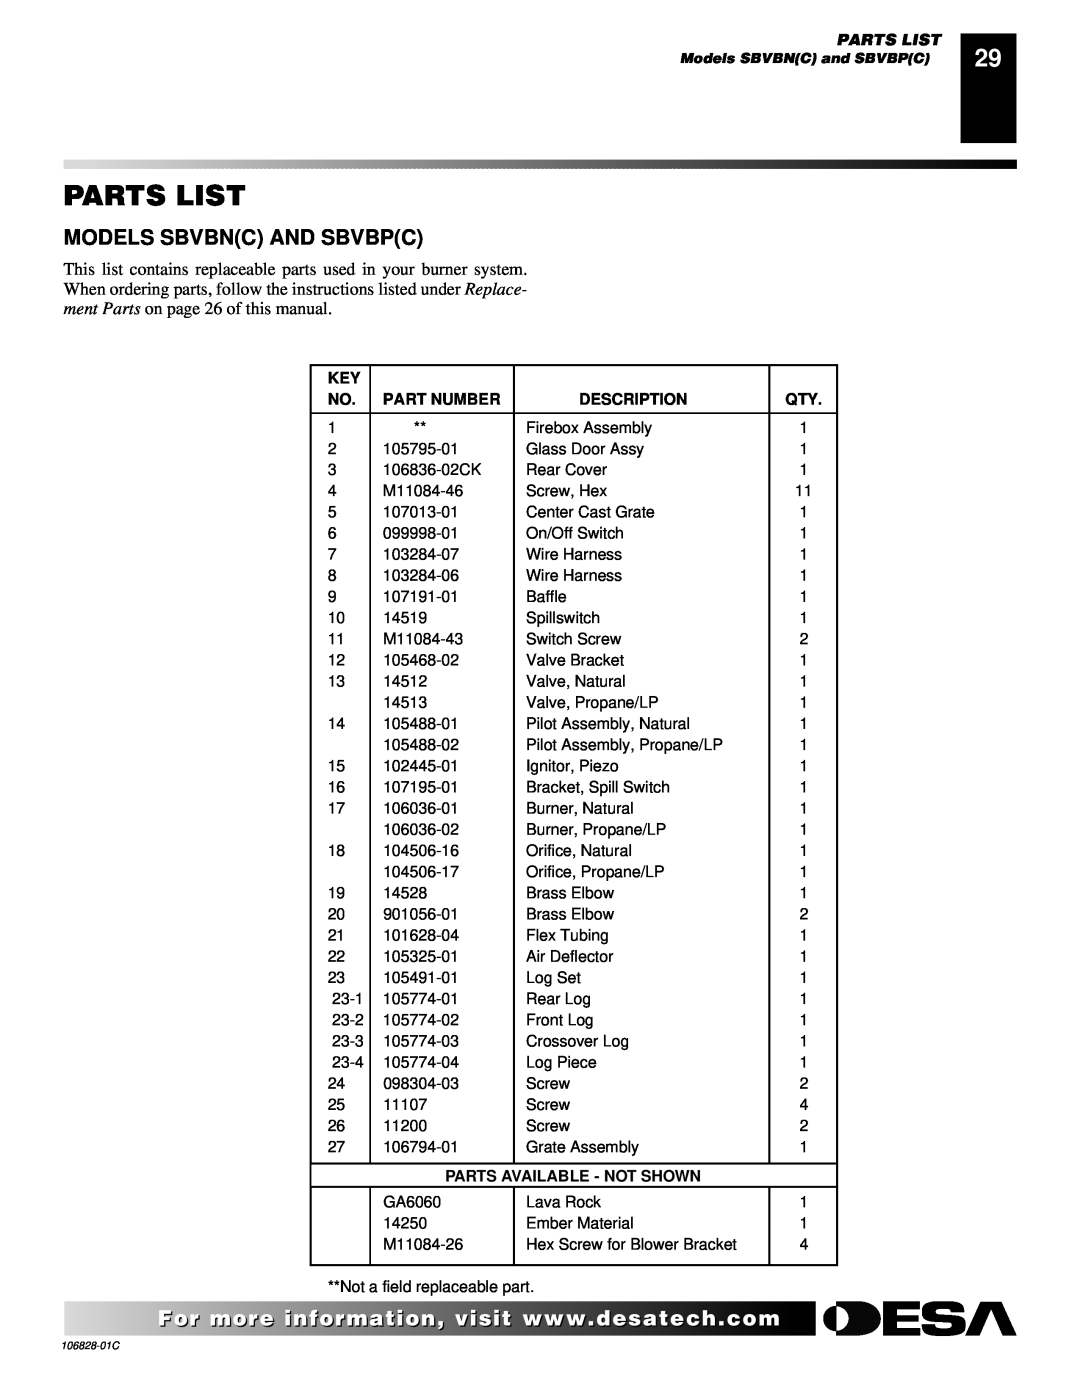 Desa SBVBP(C), SBVBN(C) Parts List, Models Sbvbnc And Sbvbpc, Part Number, Description, Parts Available - Not Shown 